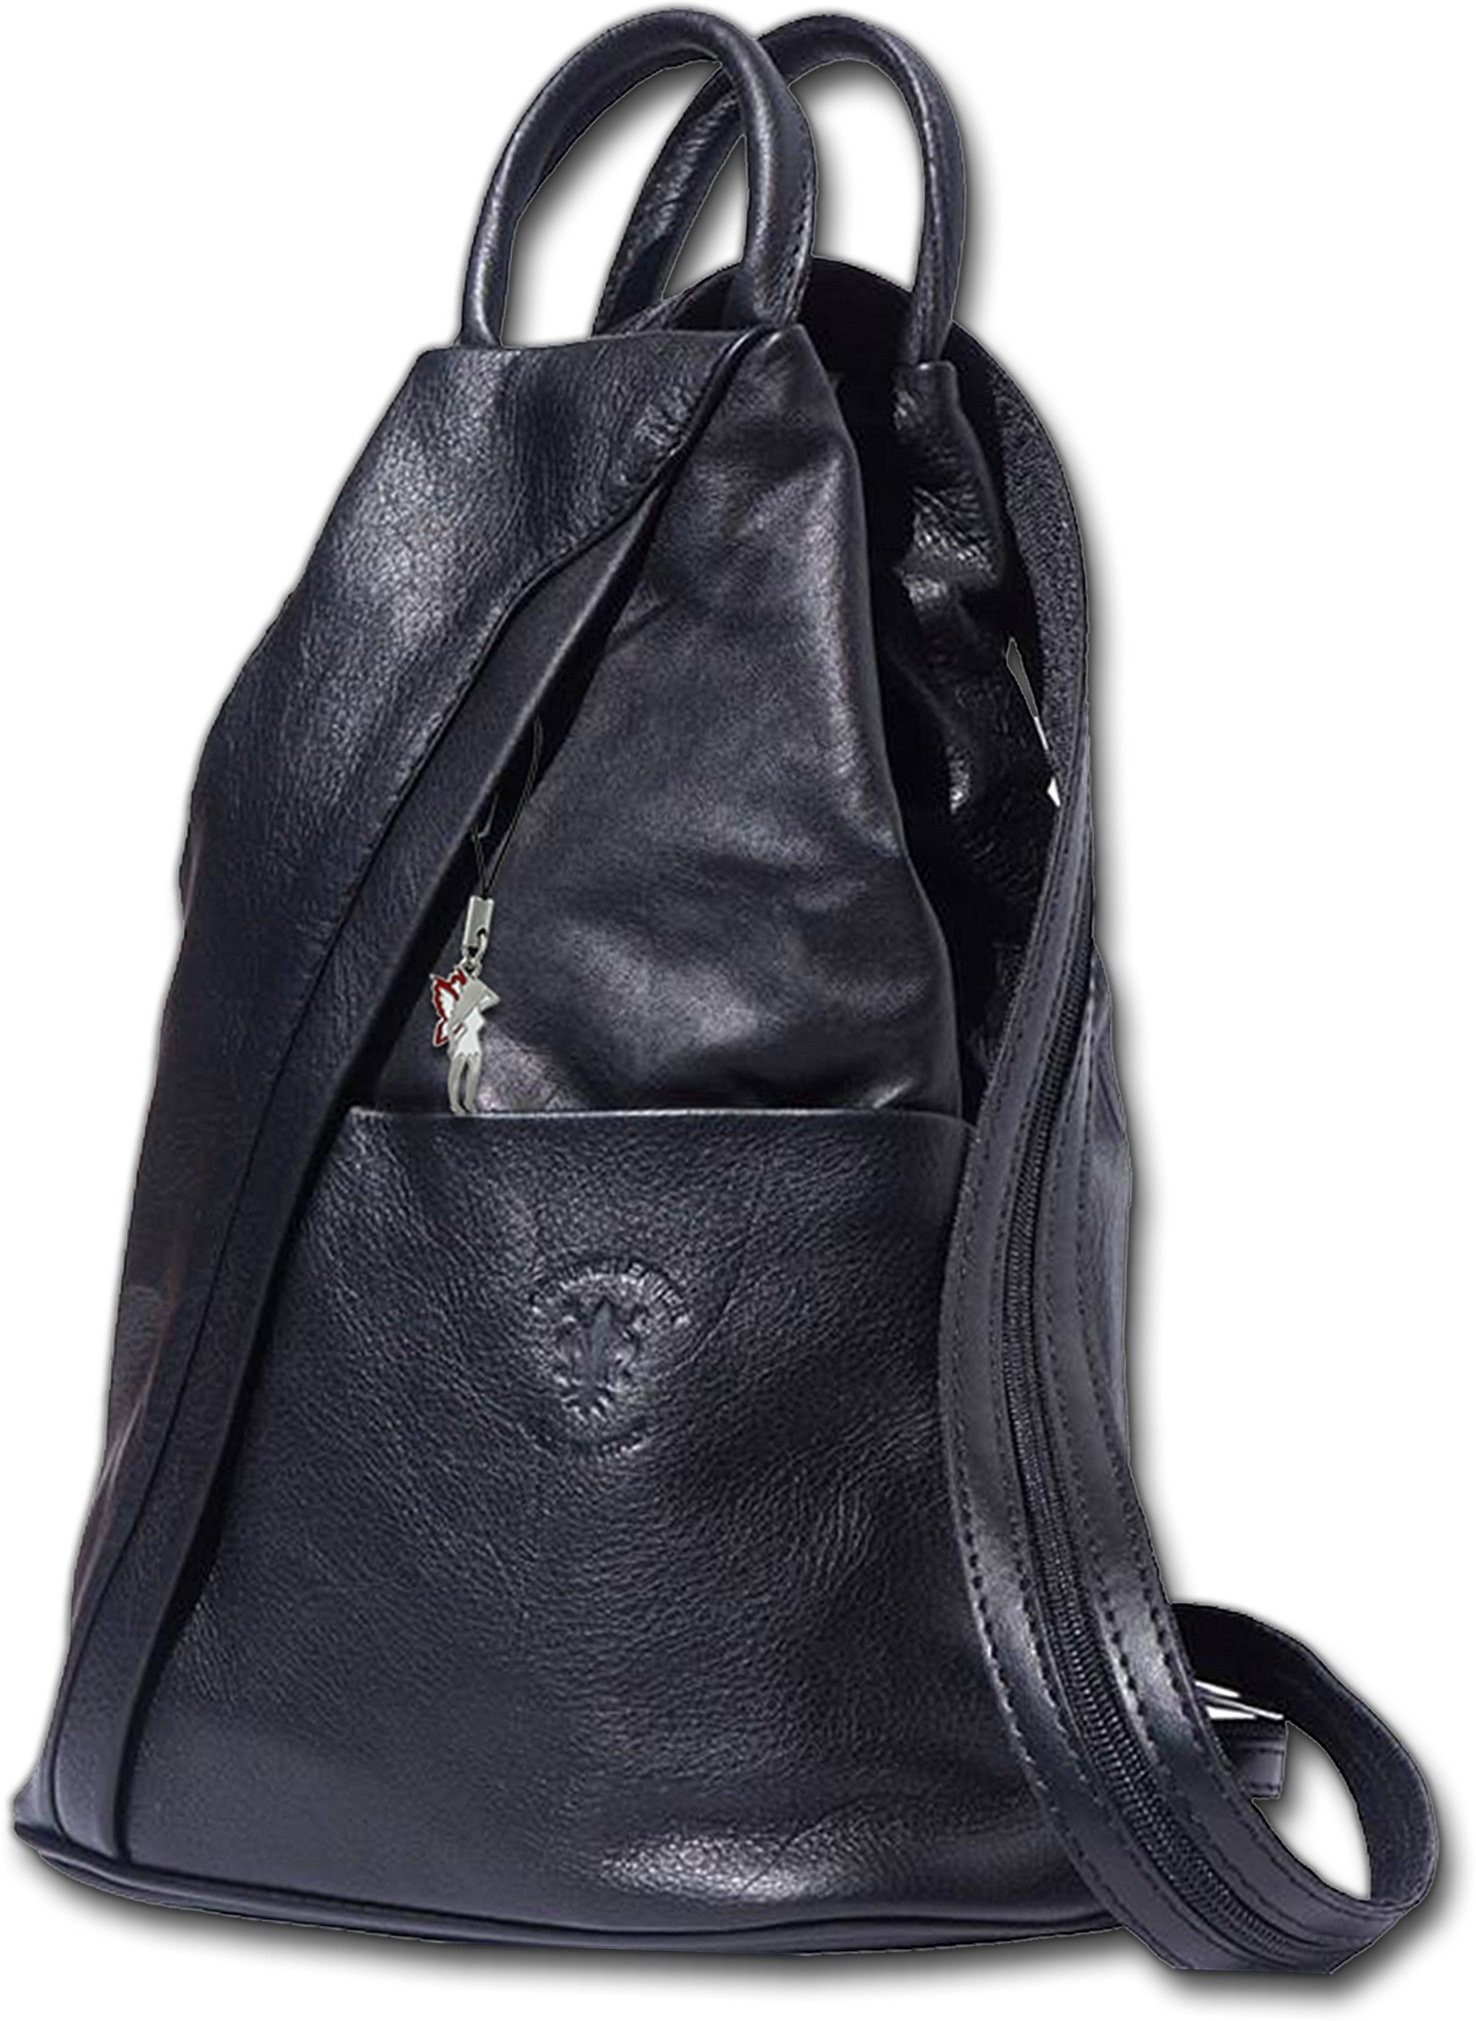 FLORENCE Cityrucksack »D2OTF604S Florence echtes Leder Damentasche«, Damen  Rucksack, Tasche aus Echtleder in schwarz, ca. 26cm Breite, Made-In Italy  online kaufen | OTTO